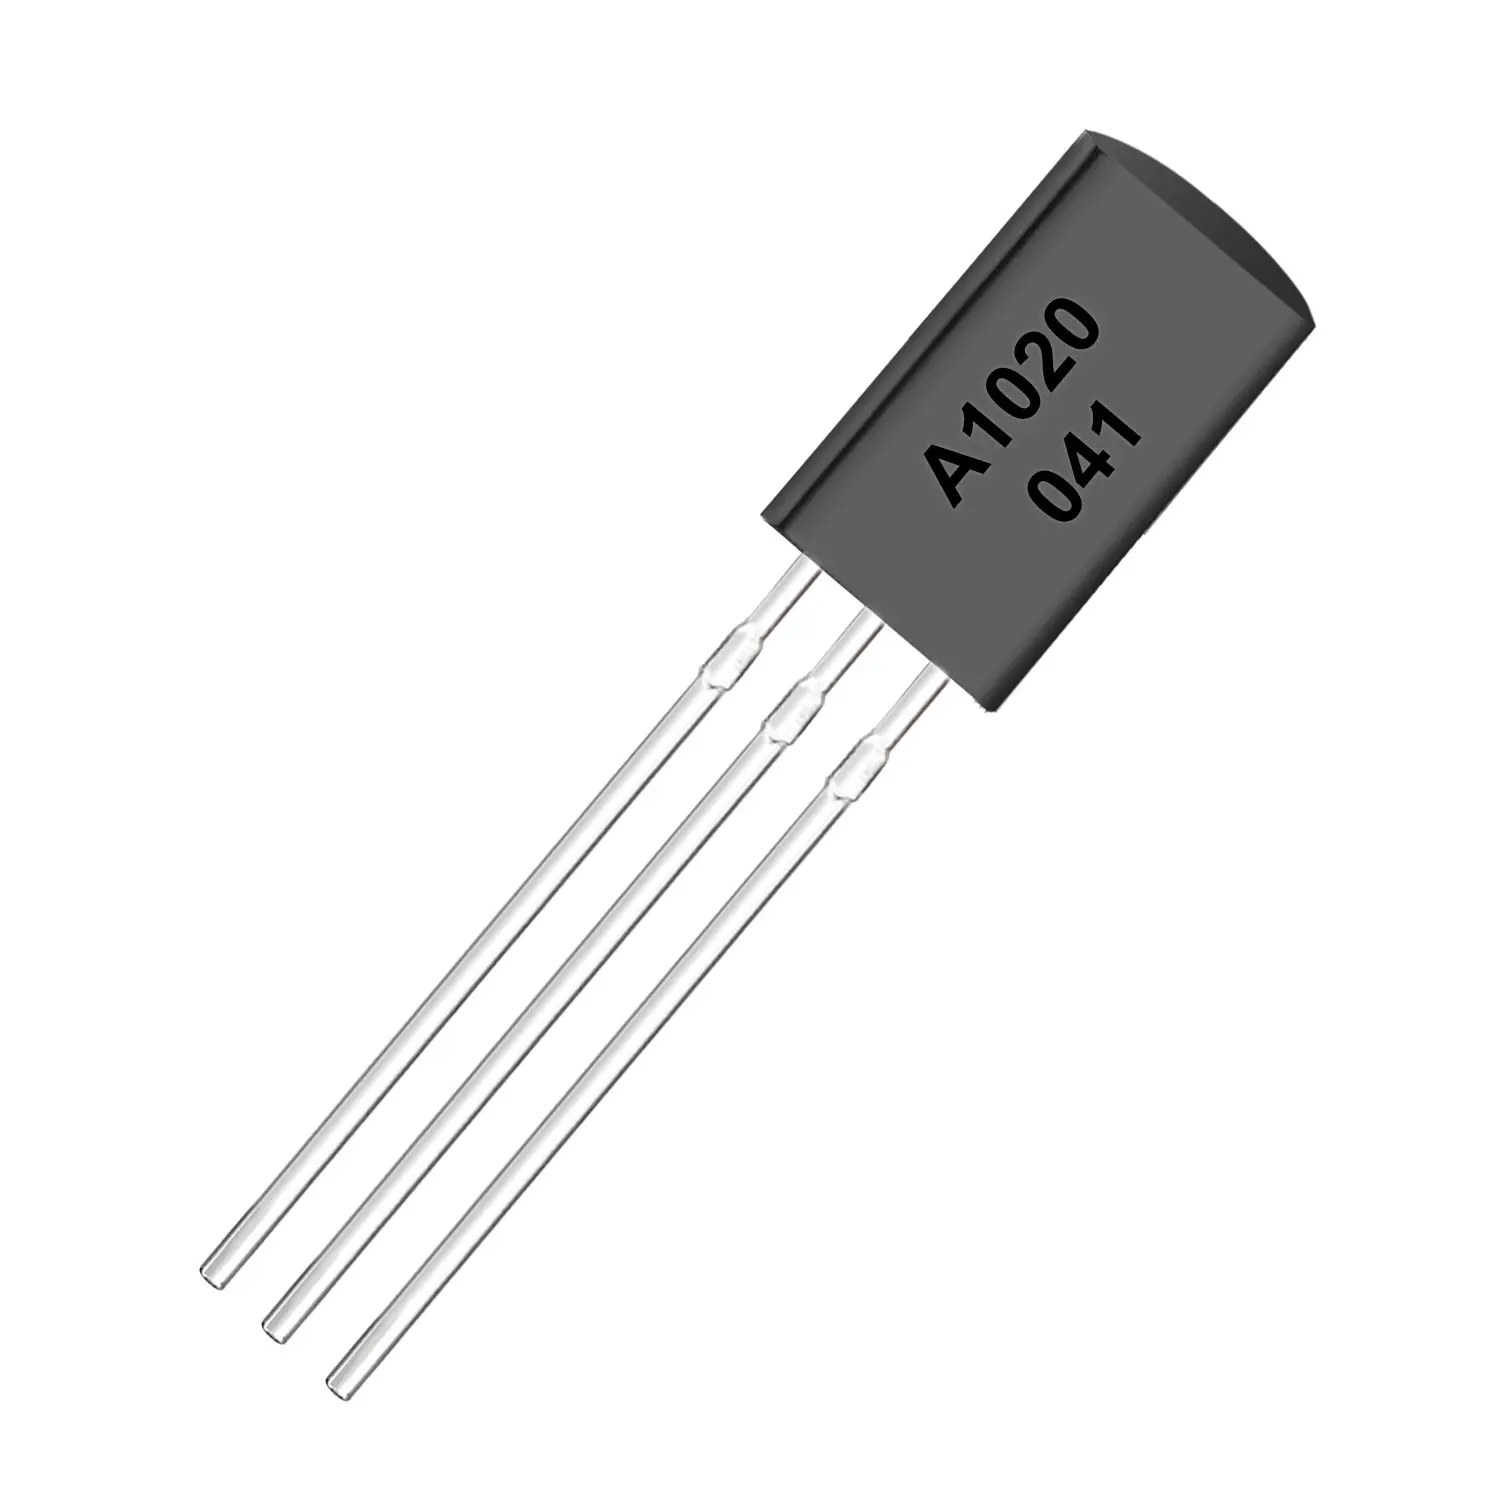 Brand New 200pcs 2SA1020 A1020 PNP Transistors 